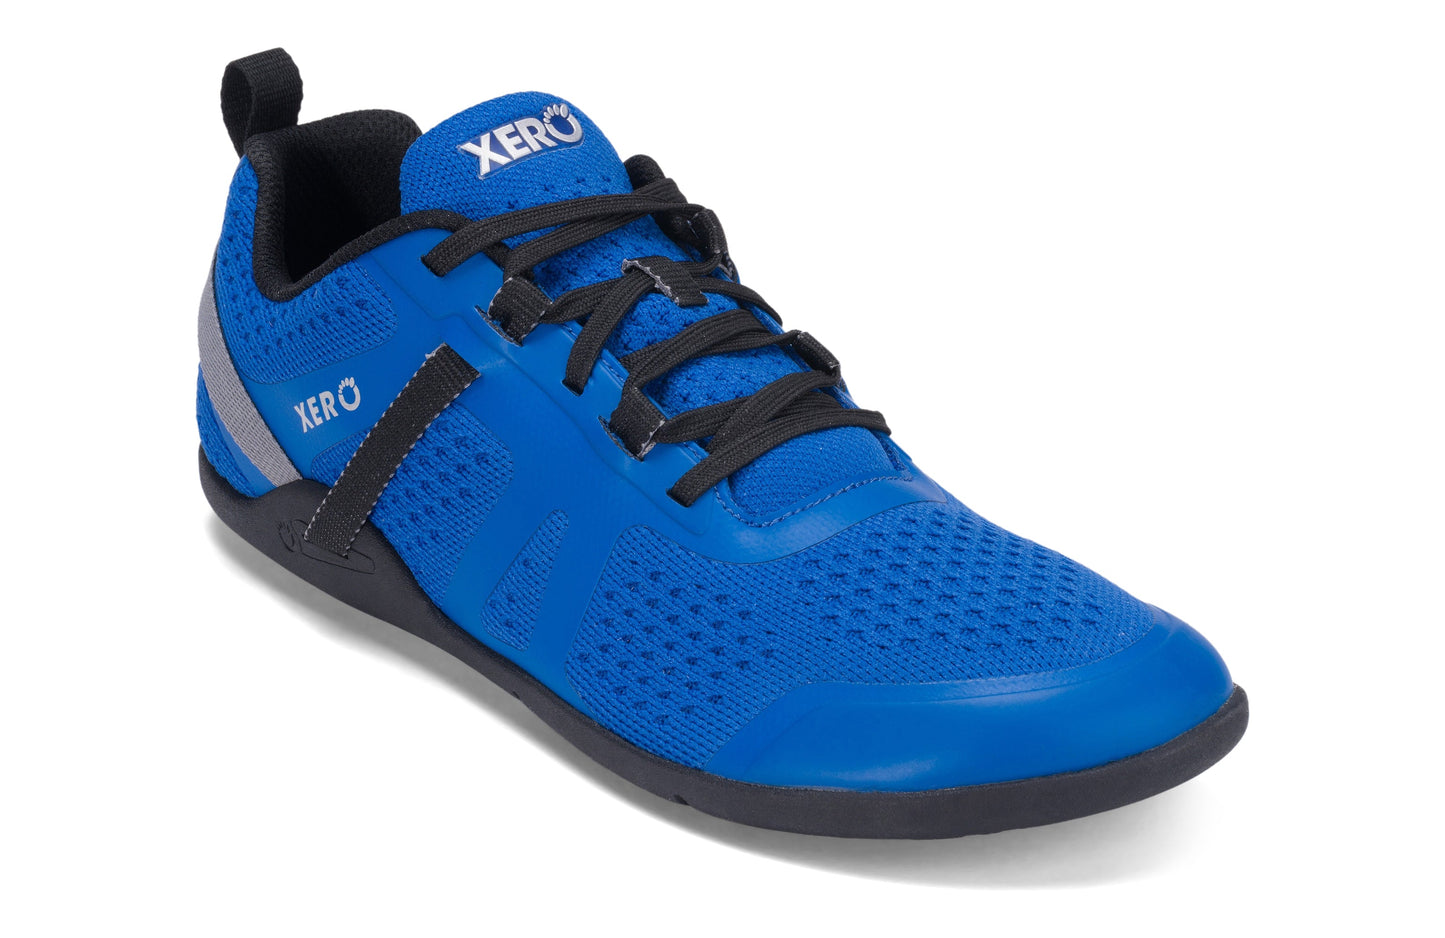 Xero Shoes Prio Neo Mens barfods performance træningssko til mænd i farven skydiver blue, vinklet